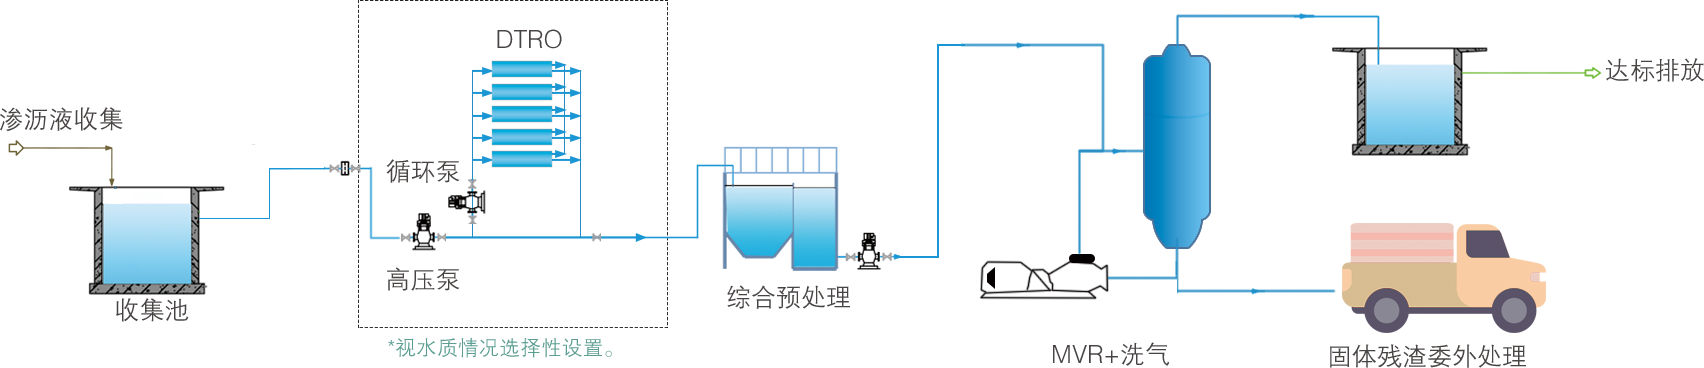 预处理——MVR——洗气 → 达标排放